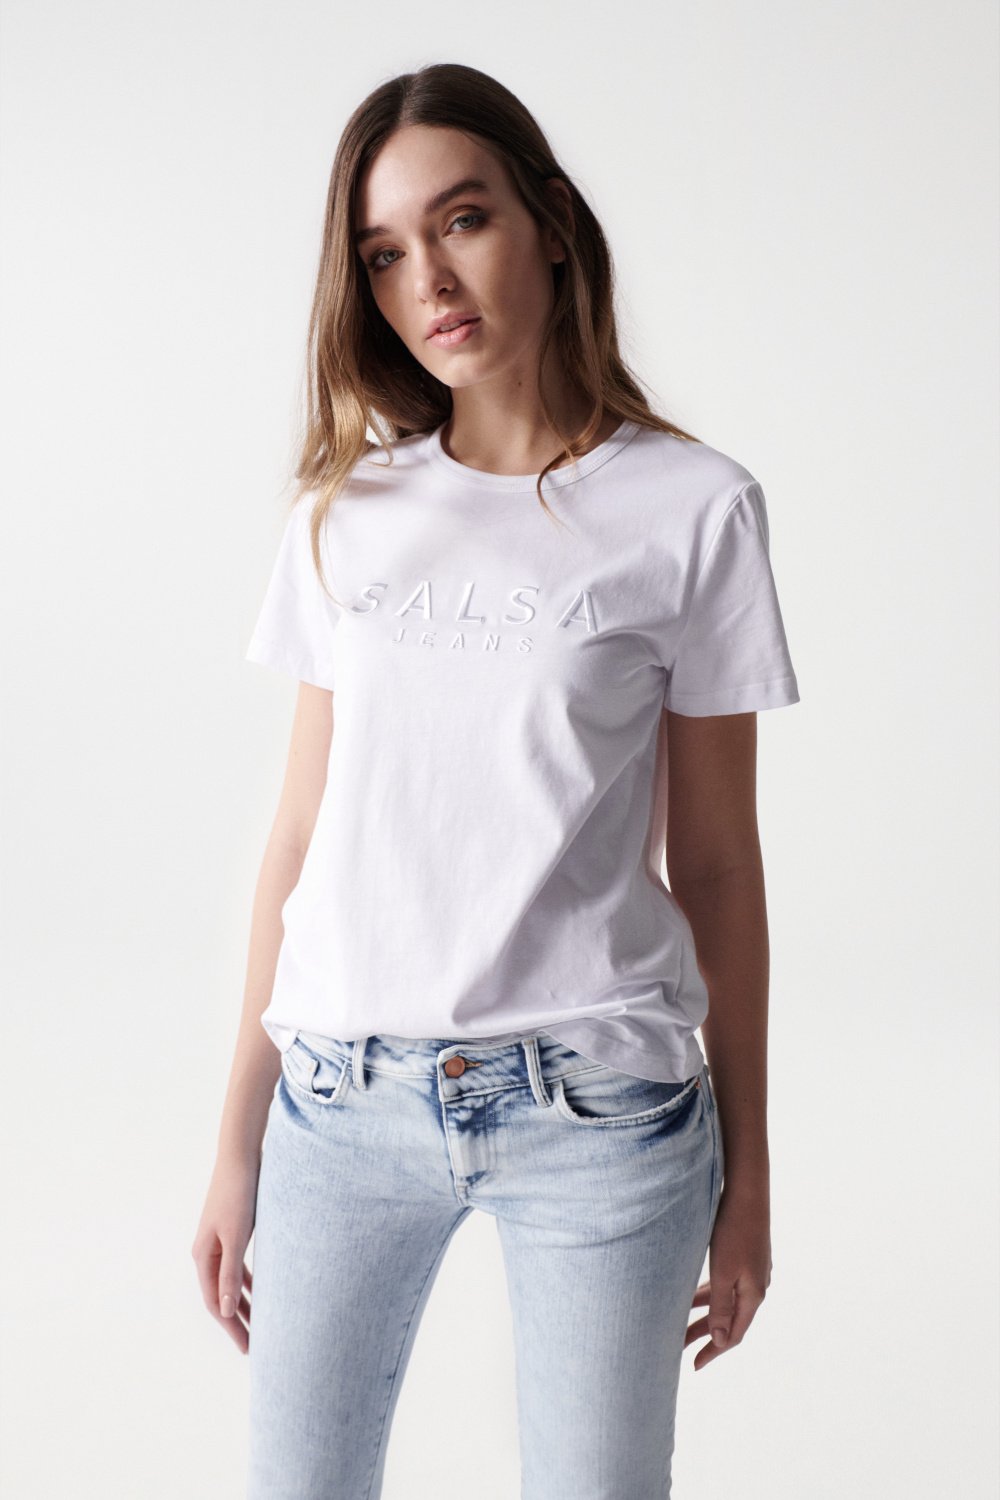 T-shirt com branding texturado - Salsa